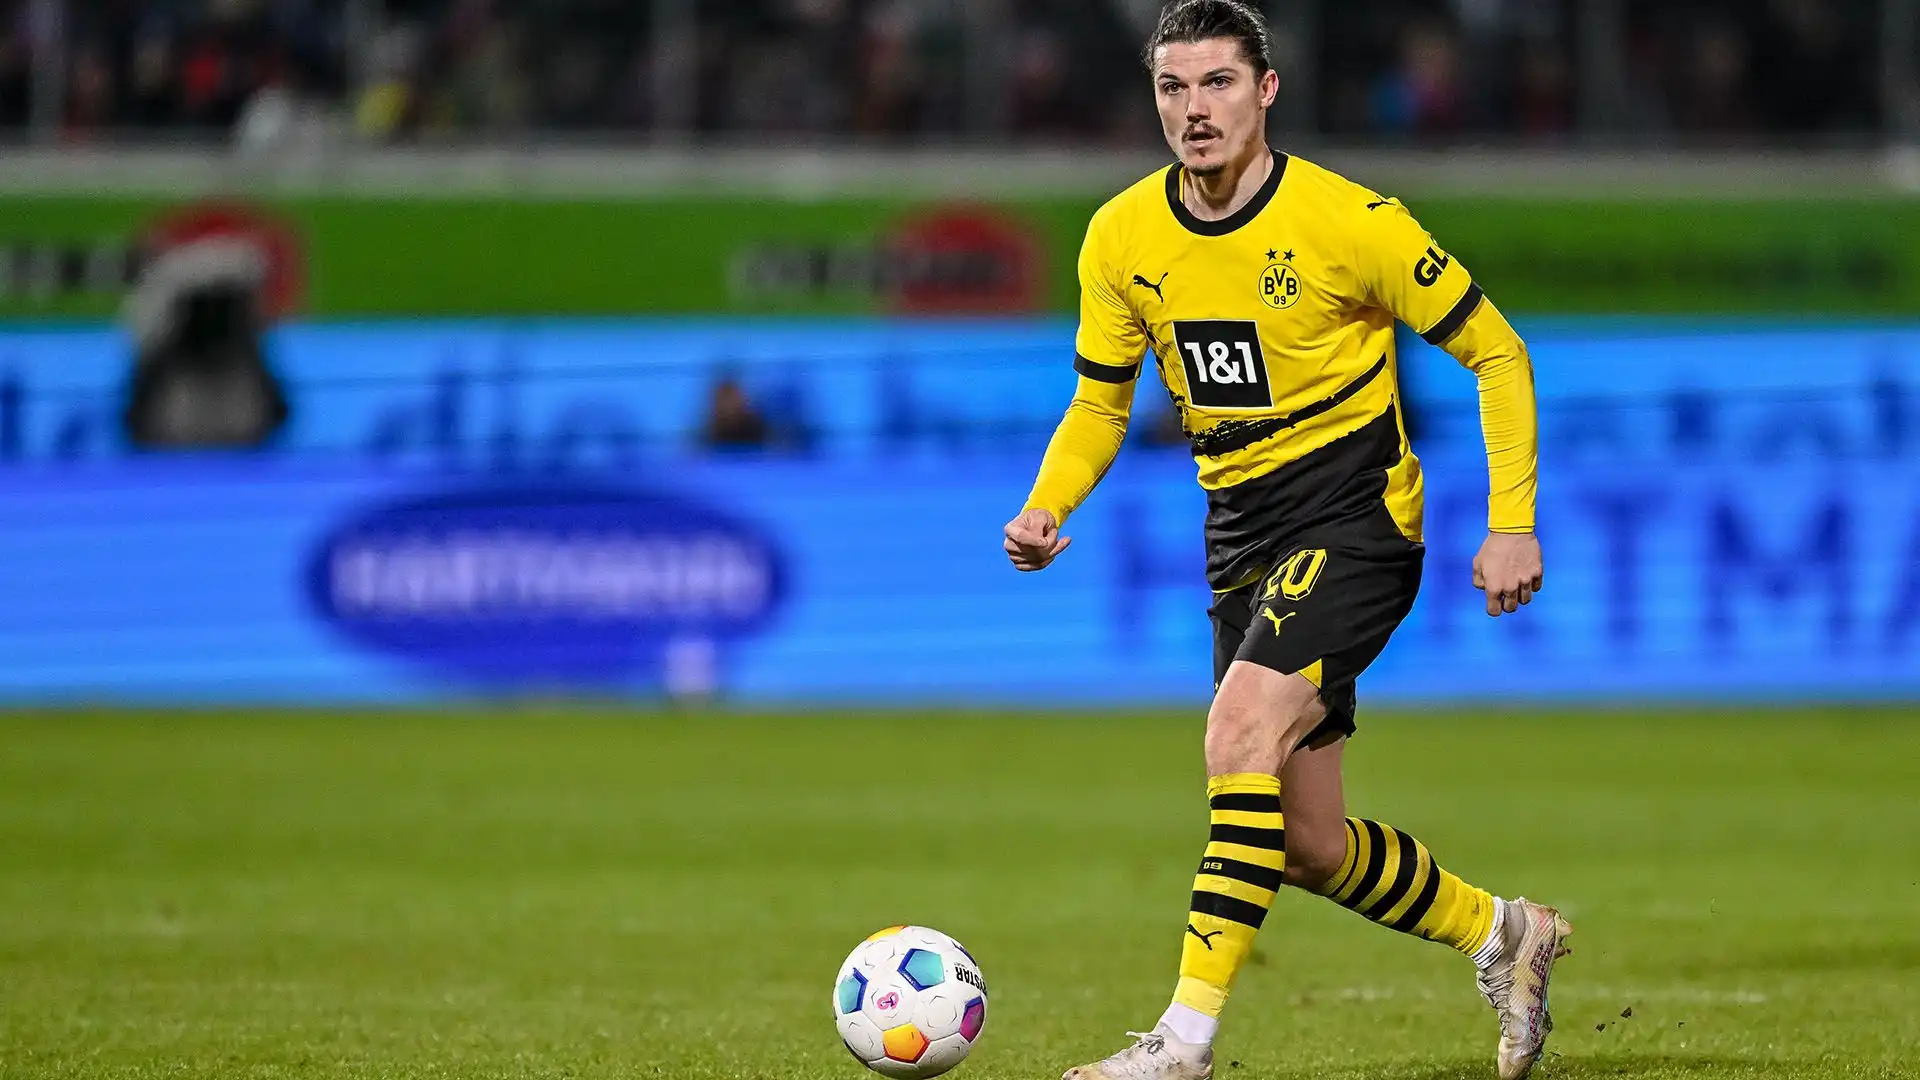 Il Borussia Dortmund potrebbe convincersi a venderlo per la giusta offerta: non è incedibile